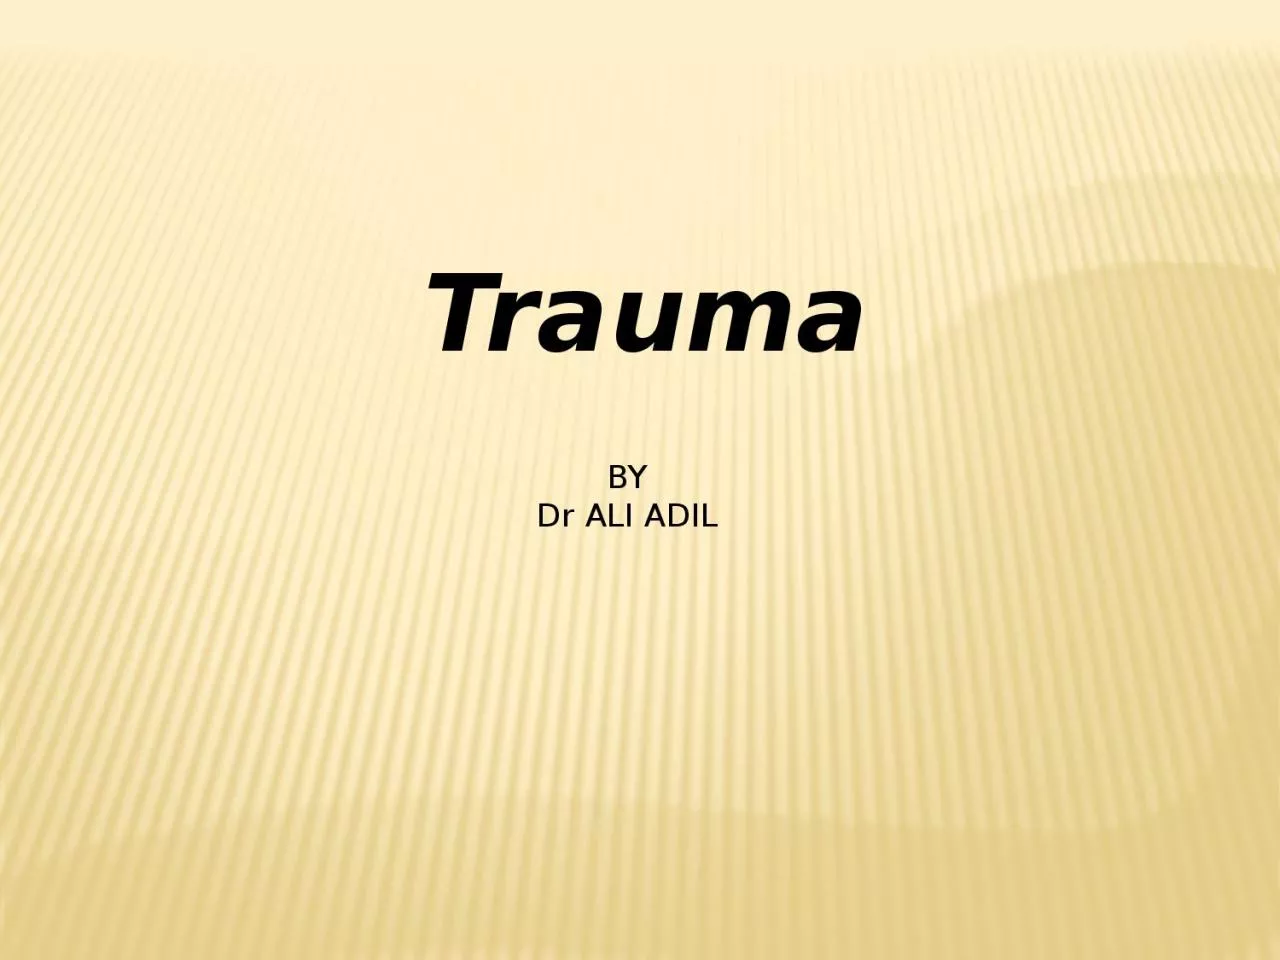 Trauma BY Dr ALI ADIL TRAUMA